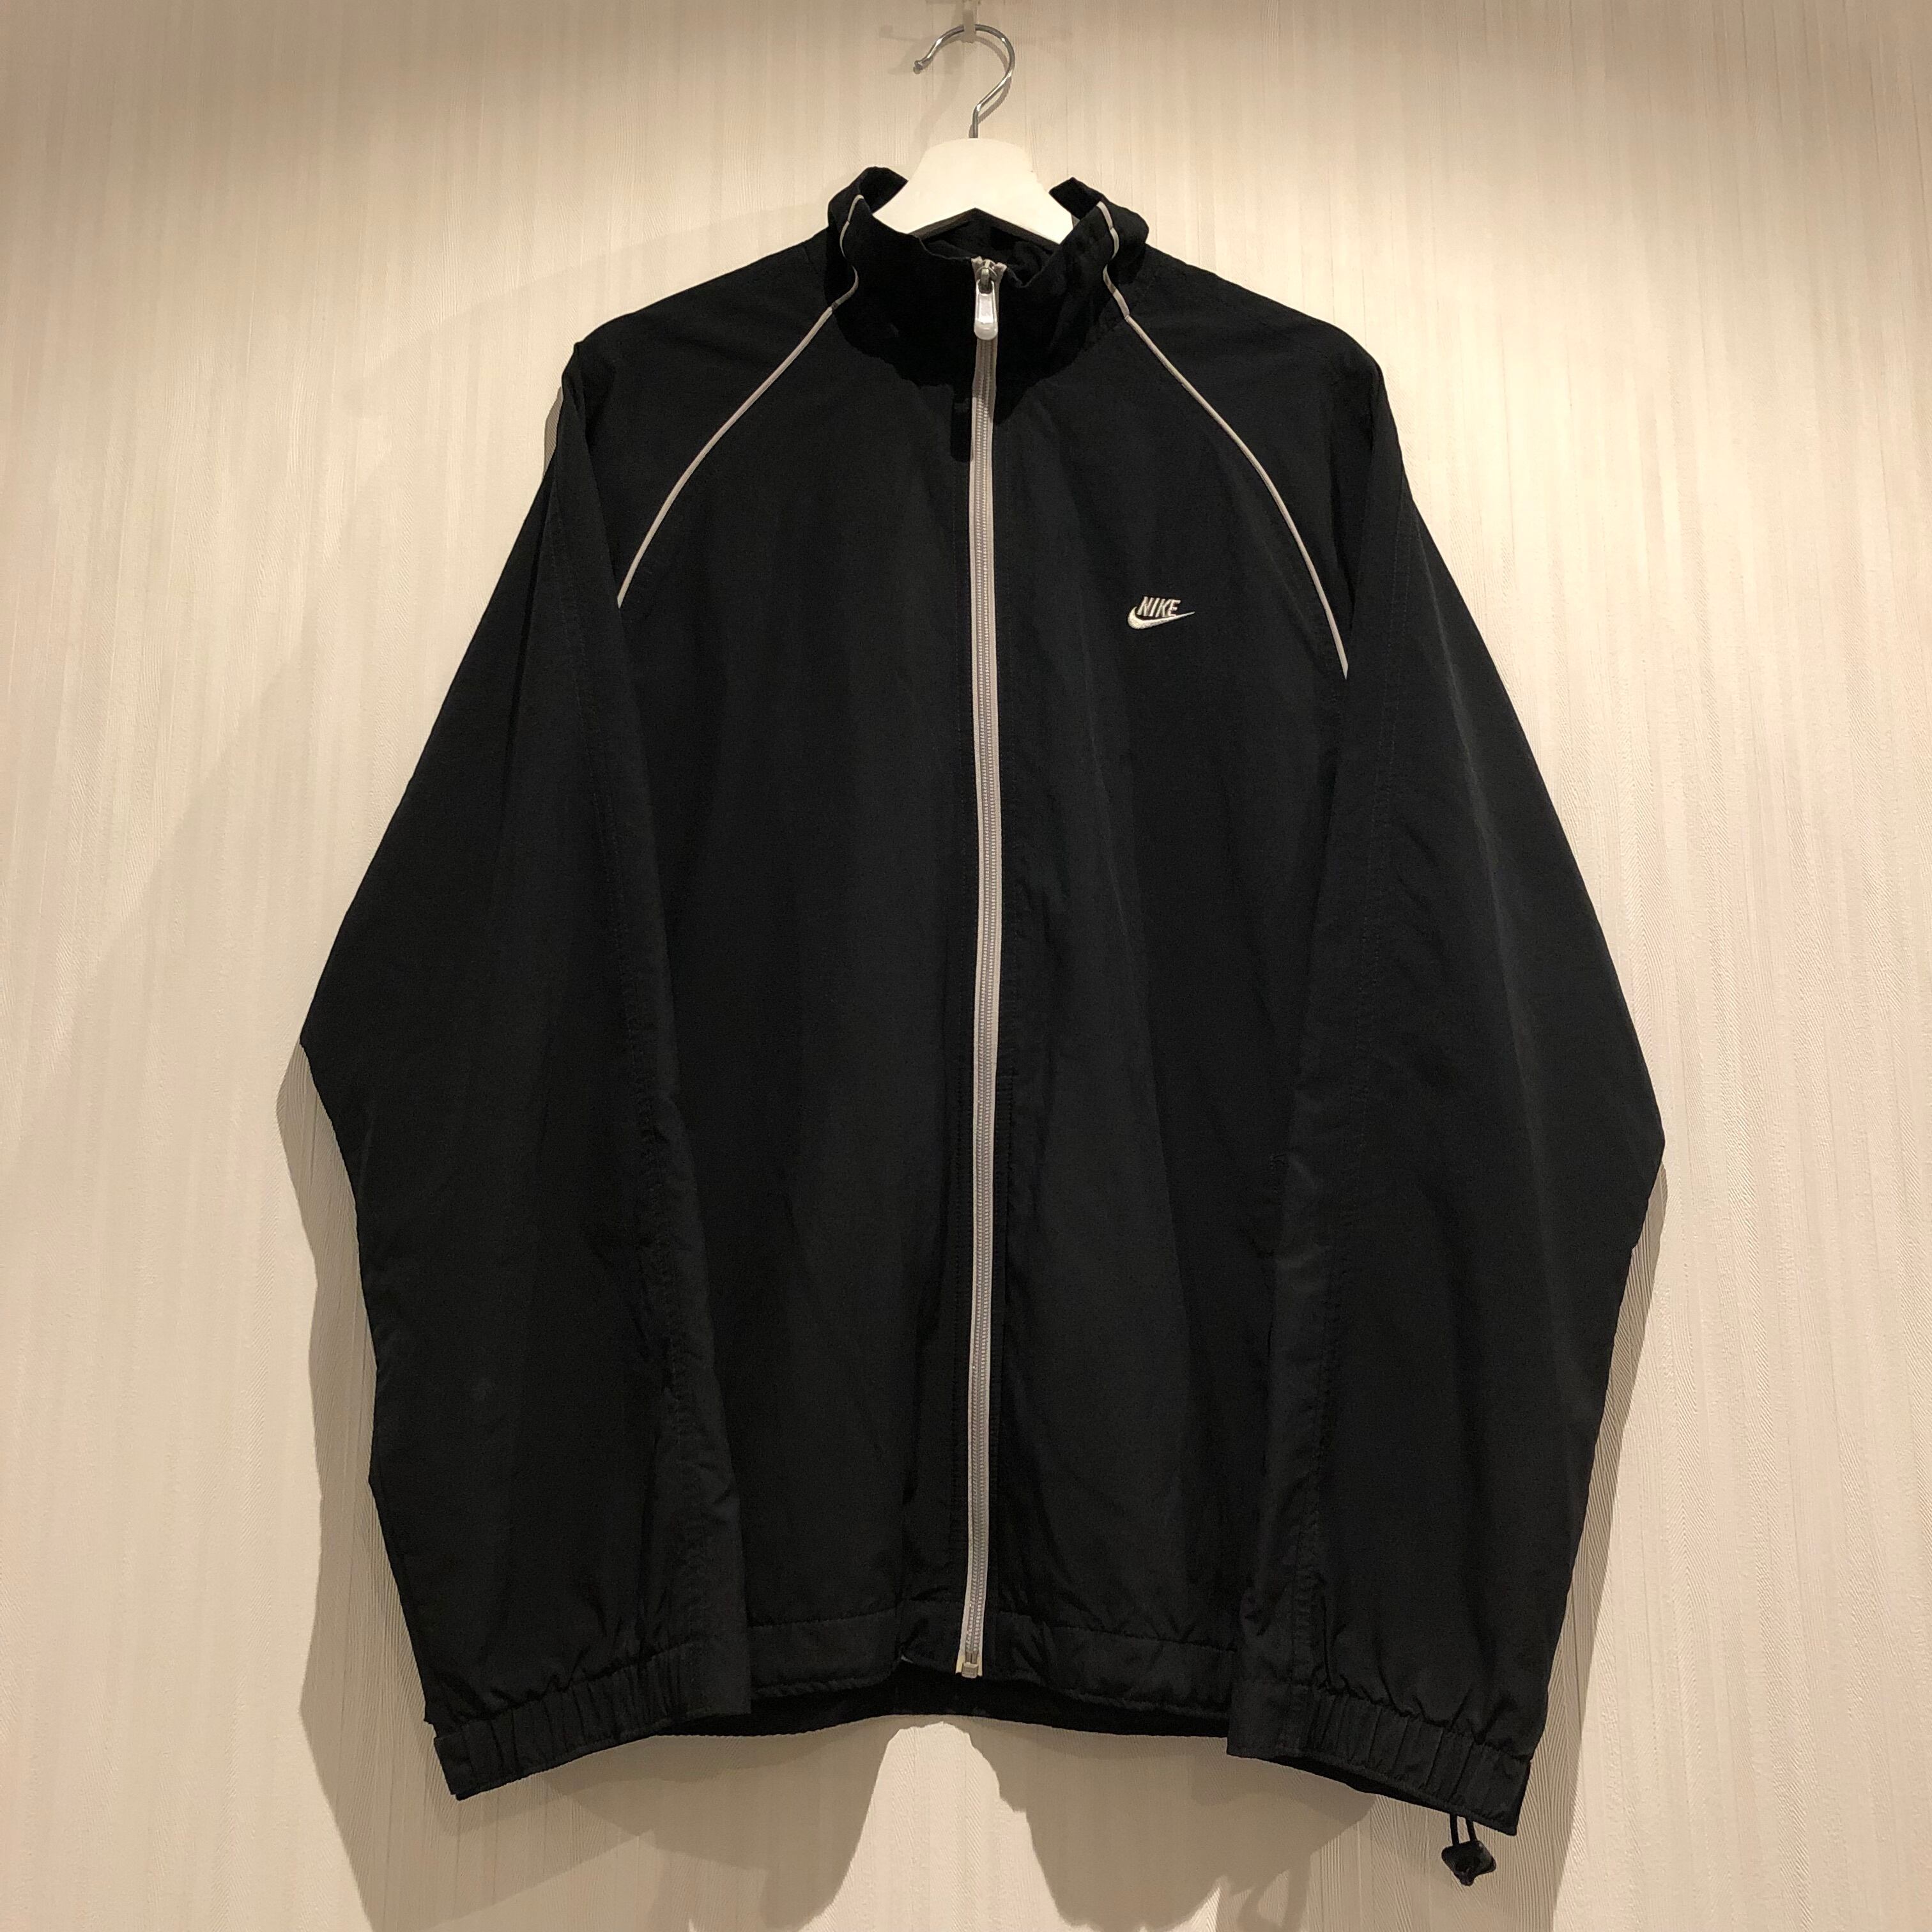 00s Hangtan track jacket